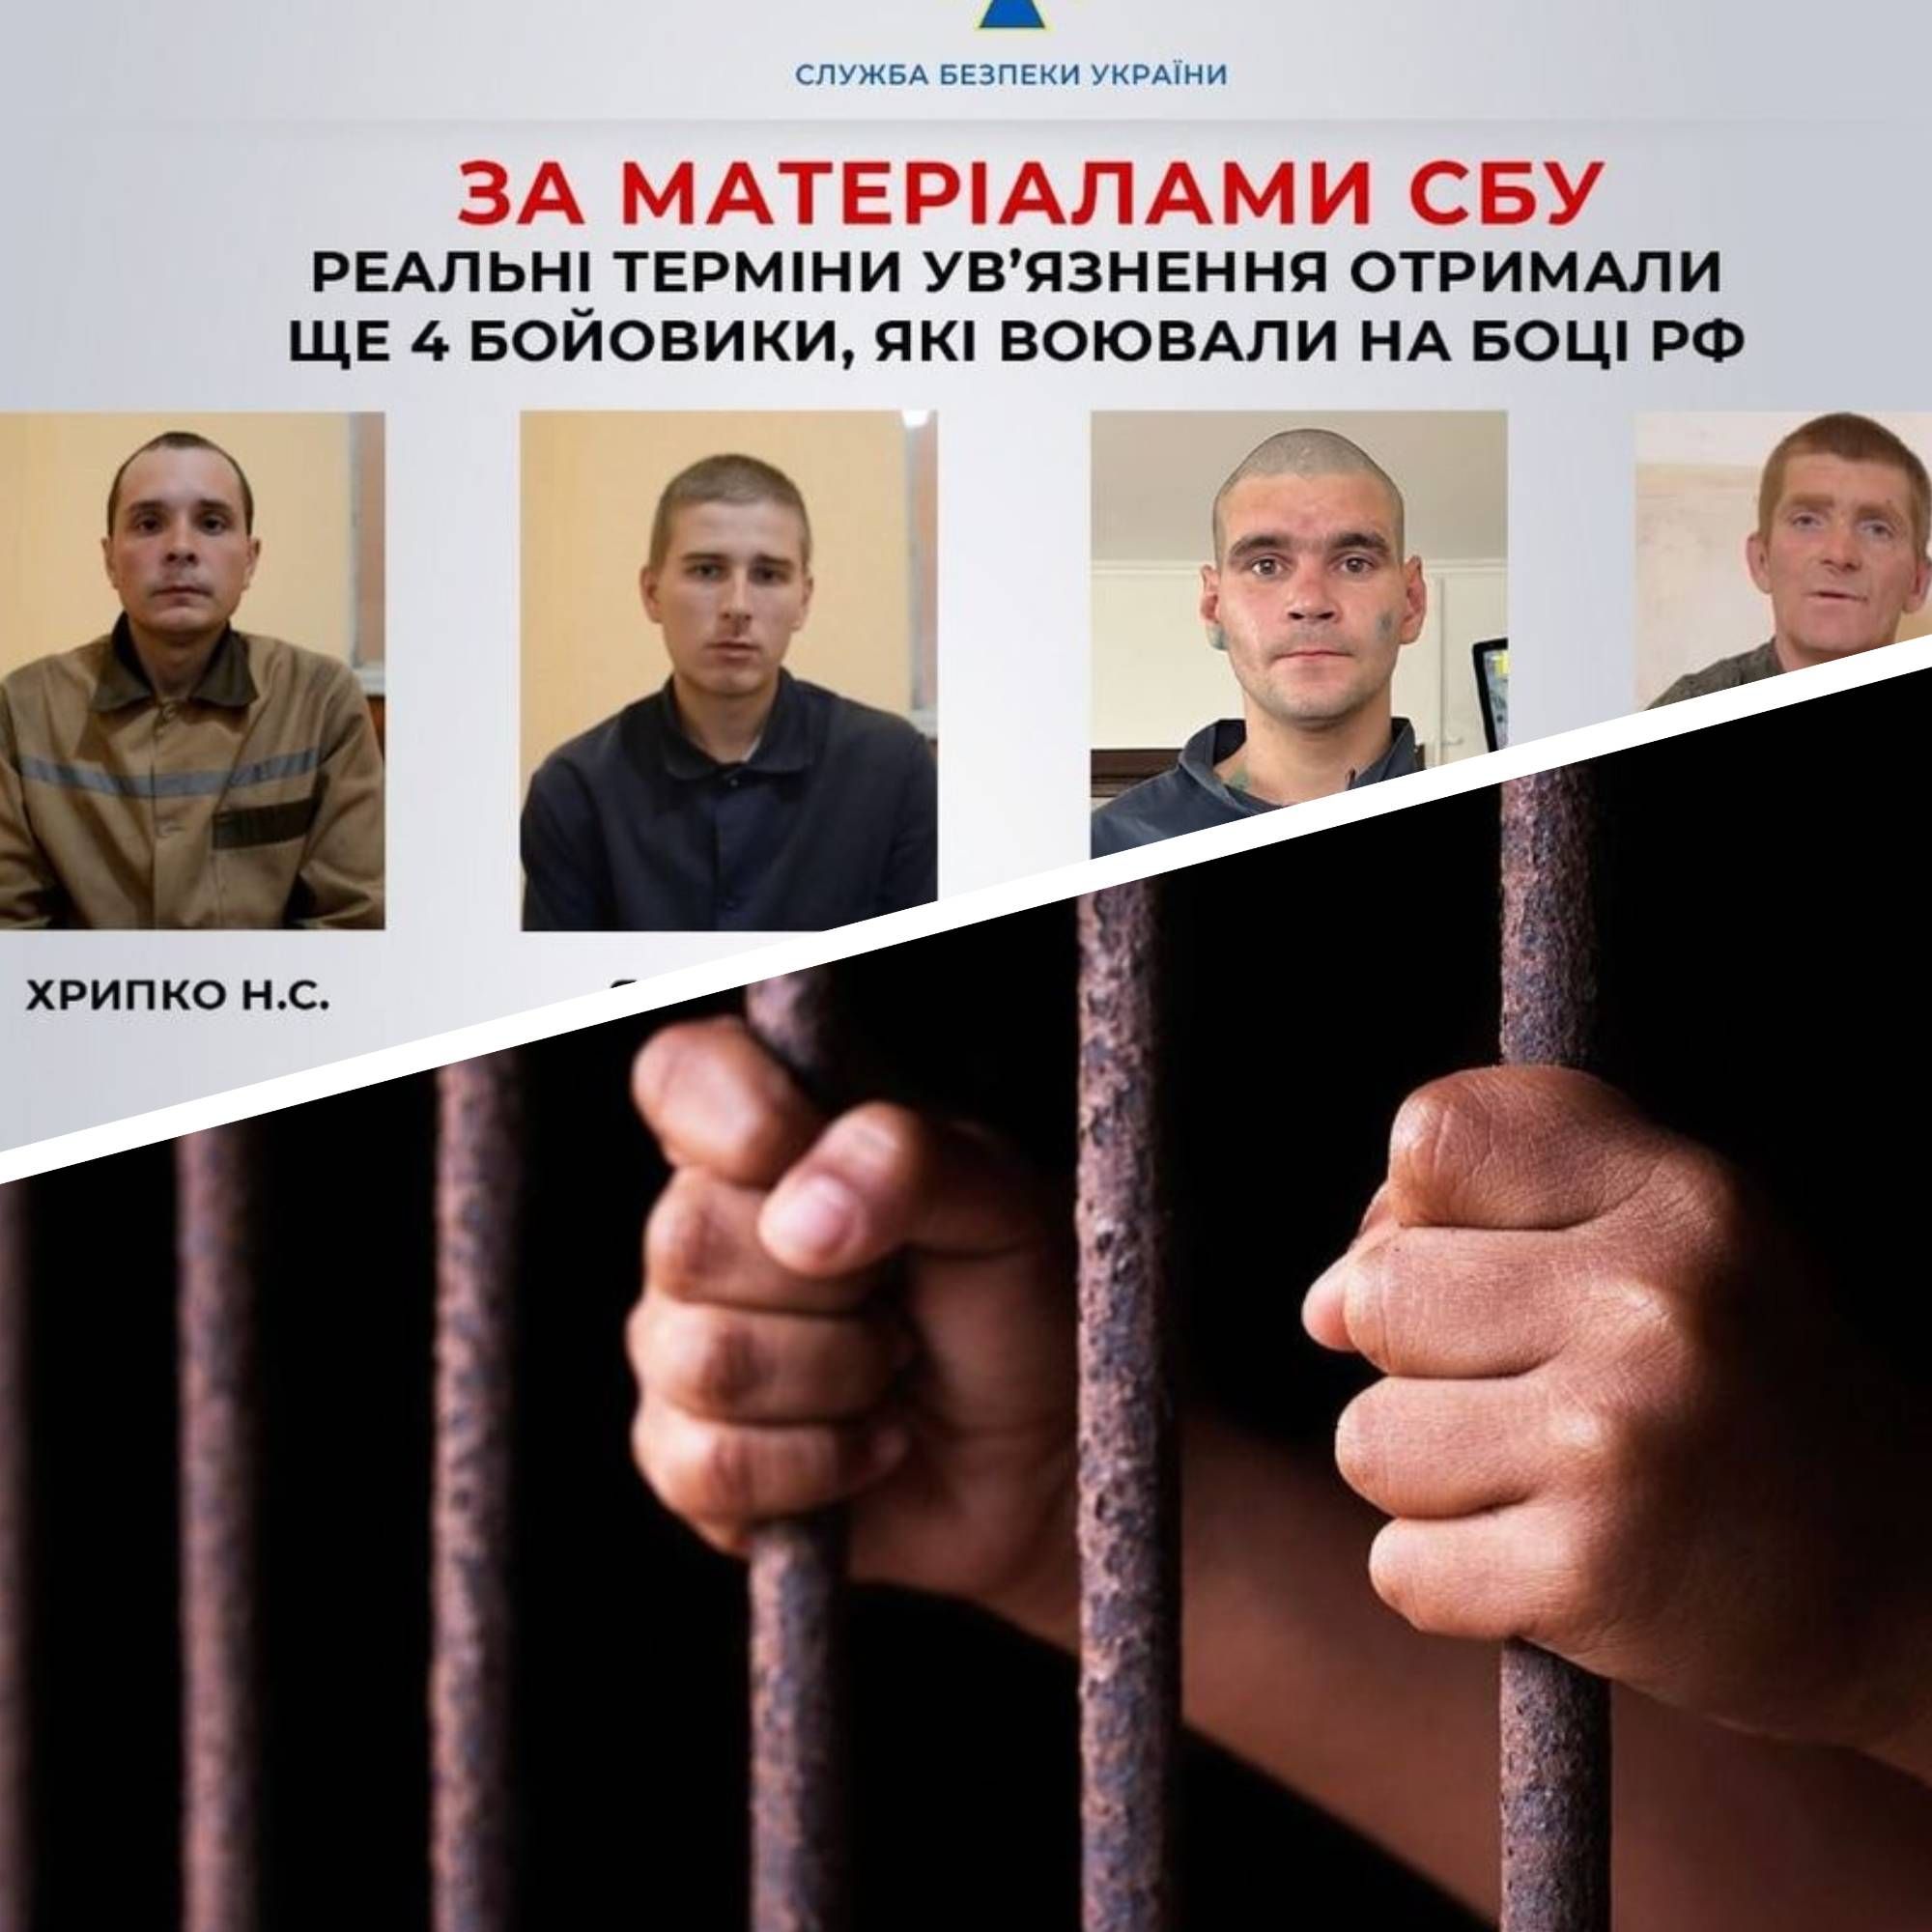 Бойовики росії - в Україні засудили 4 бойовиків, що їм загрожує 